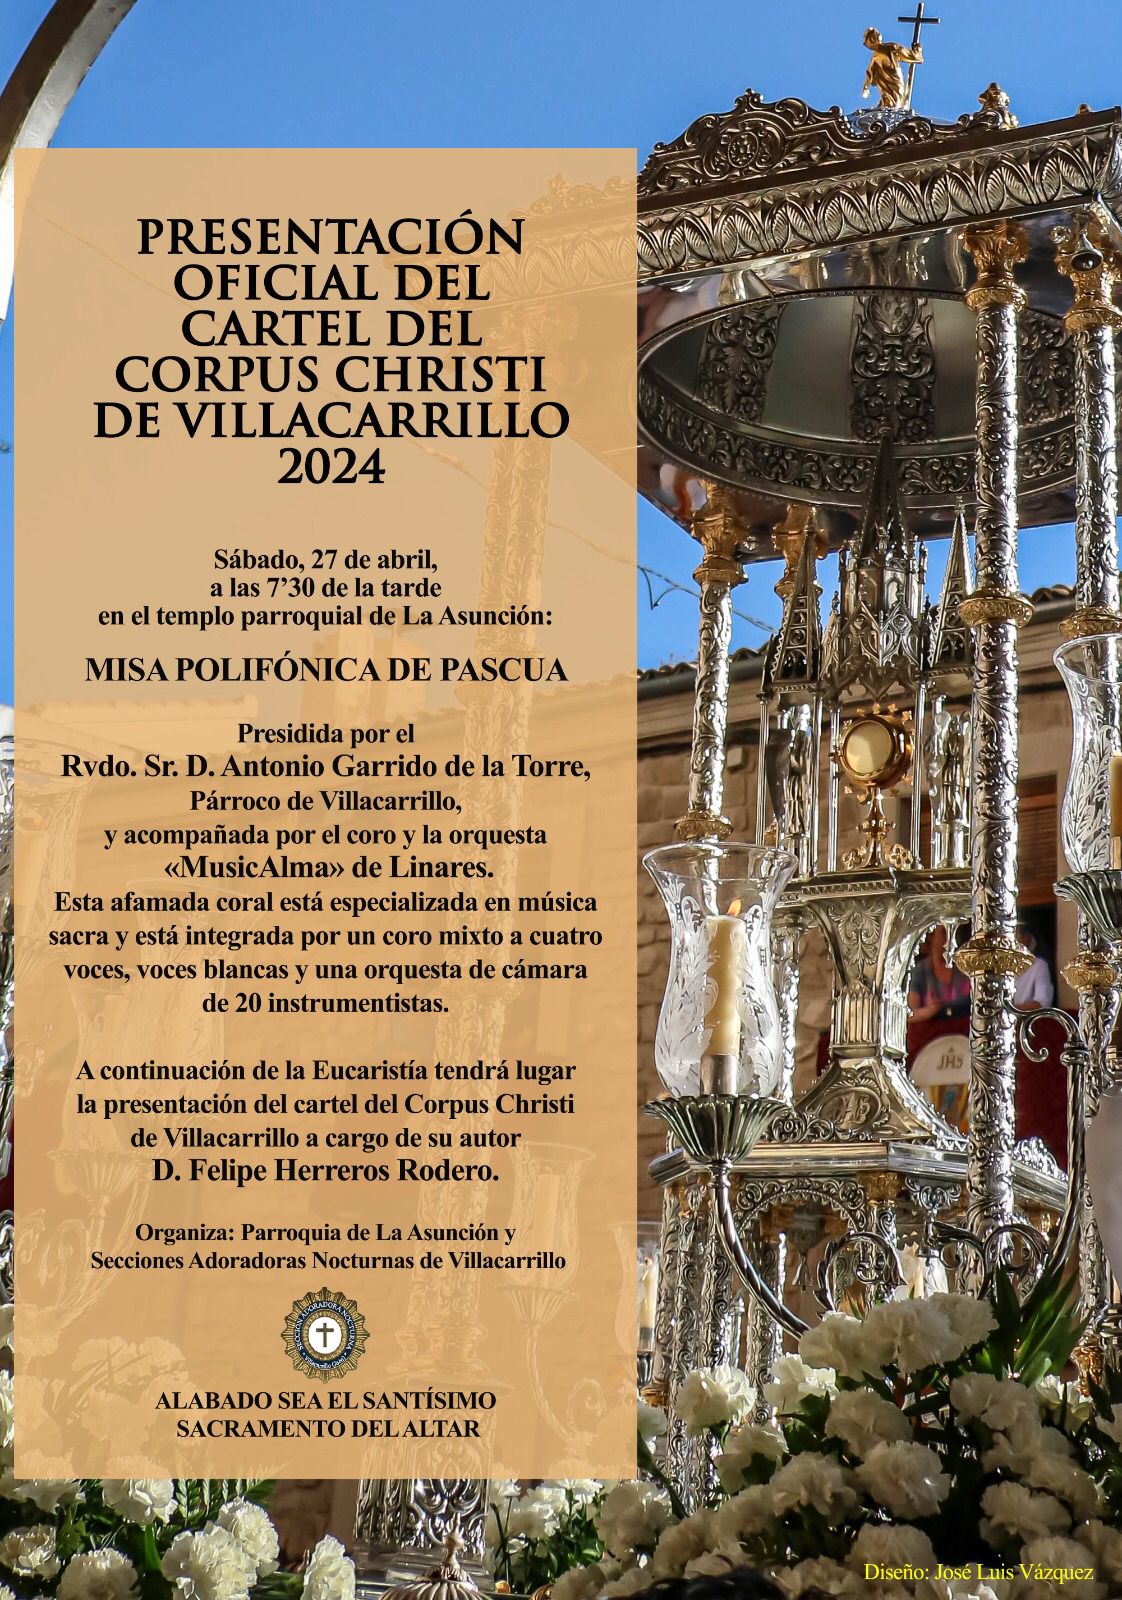 Presentación del cartel del Corpus Christi de Villacarrillo 2024